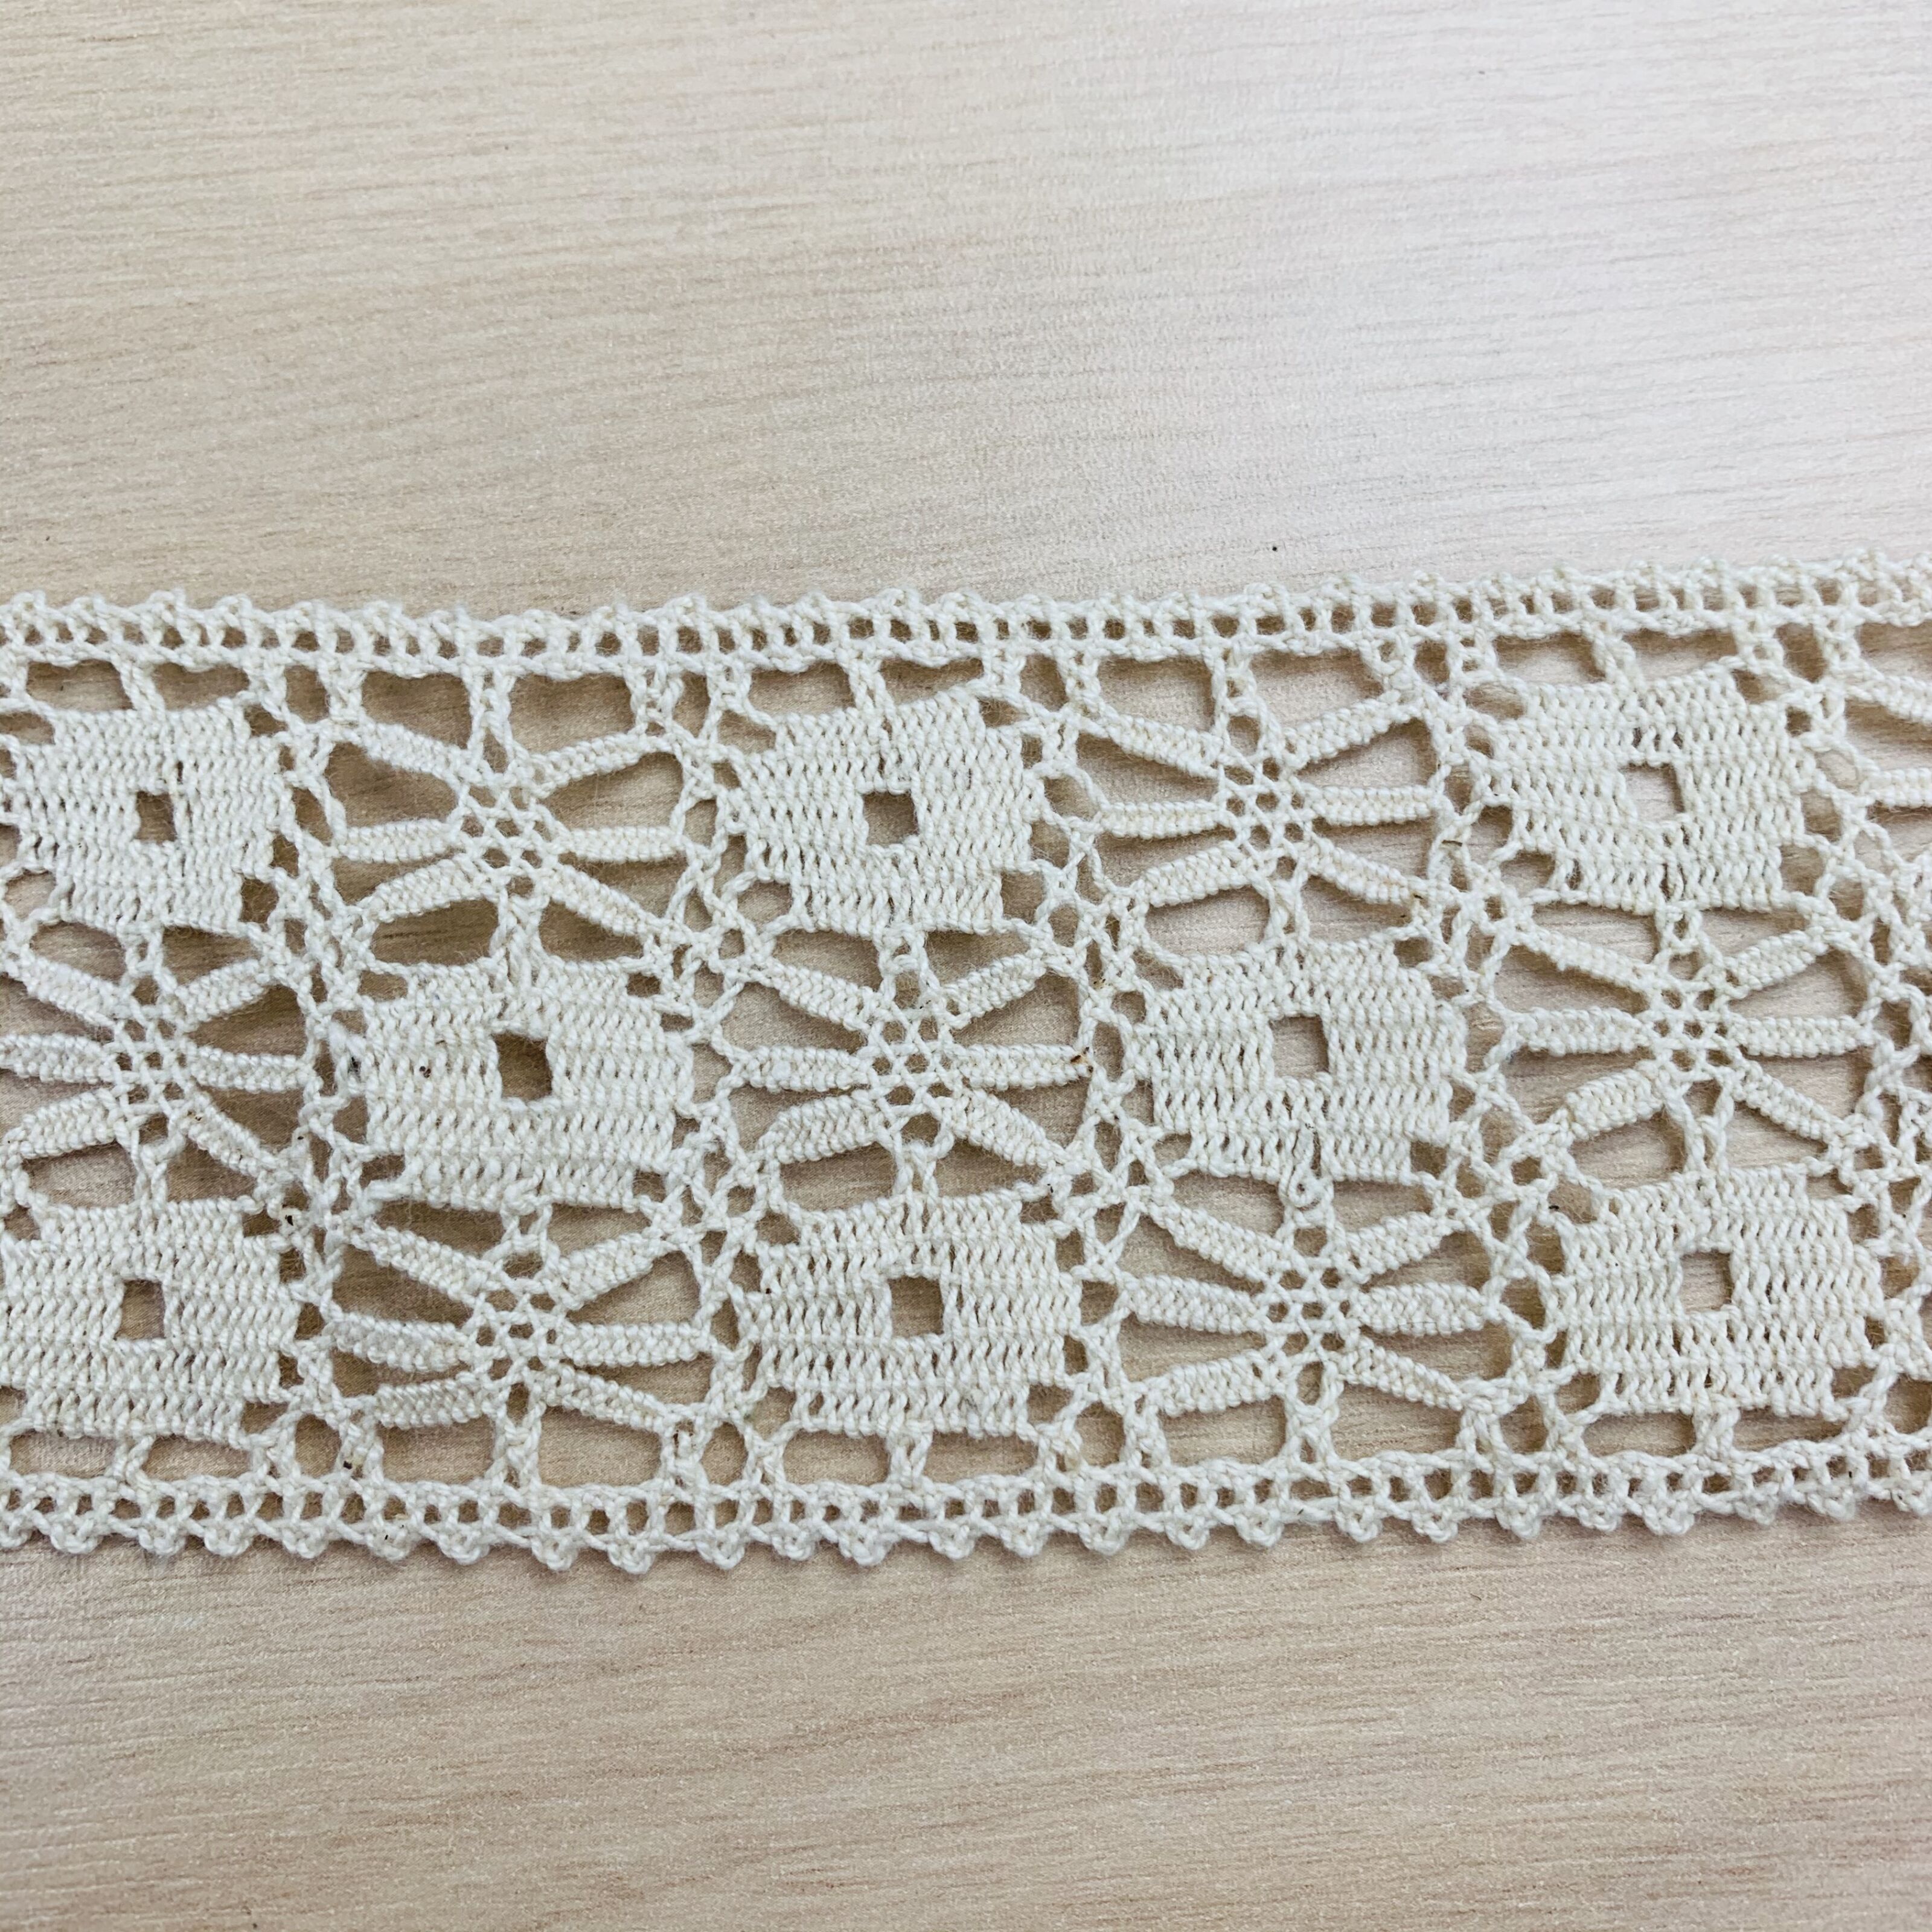 4.5cm Wide Crochet Cotton Lace Trim